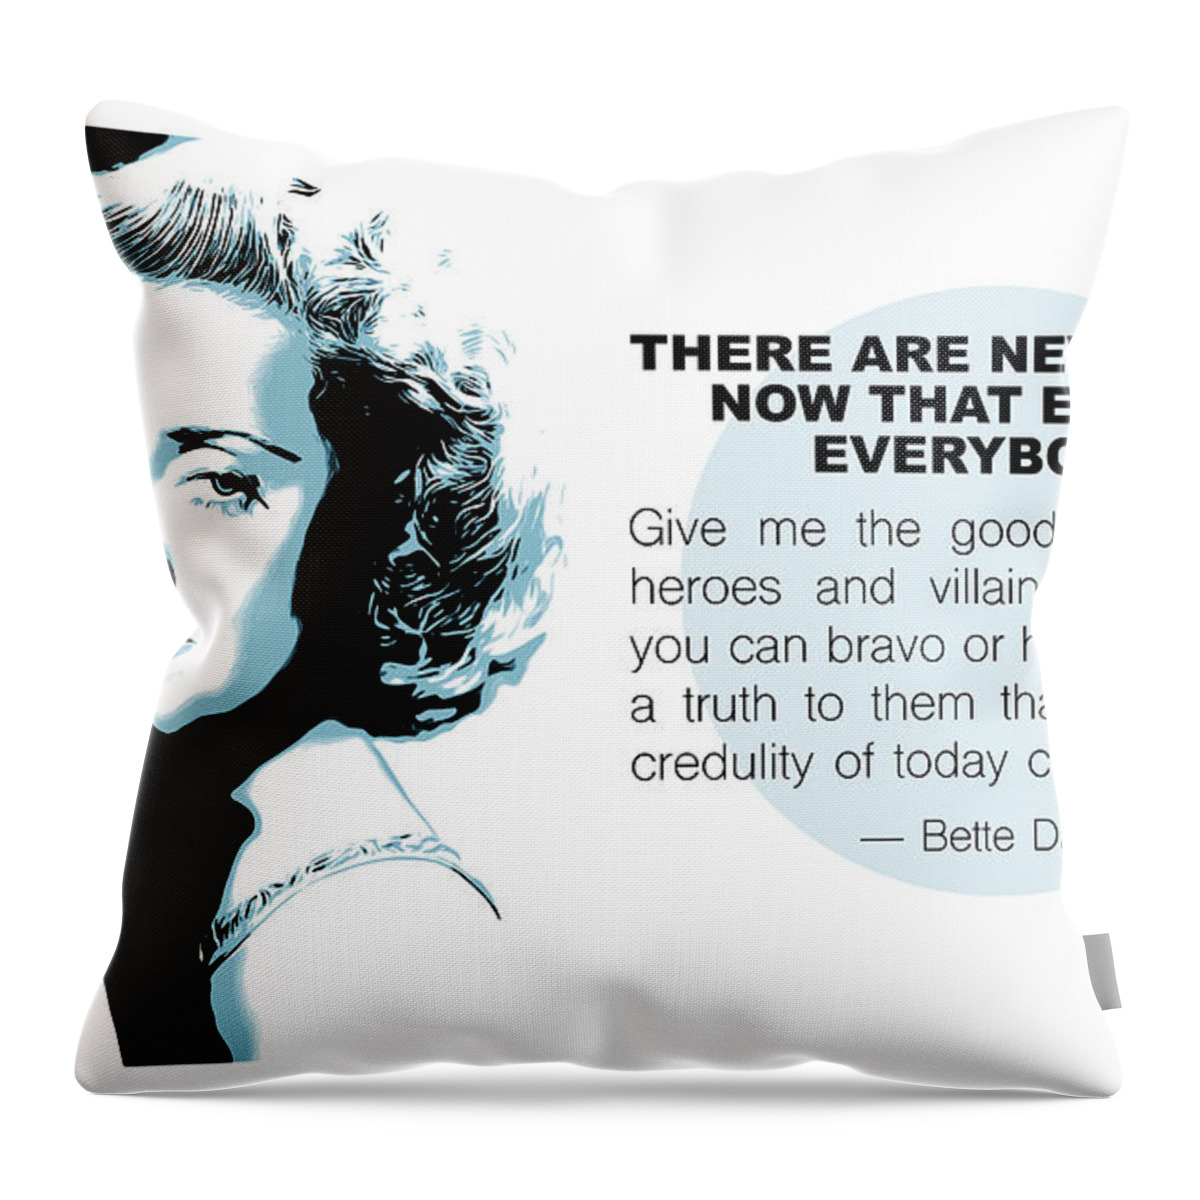 Bette Davis Throw Pillow featuring the digital art Bette Davis Quote by Greg Joens